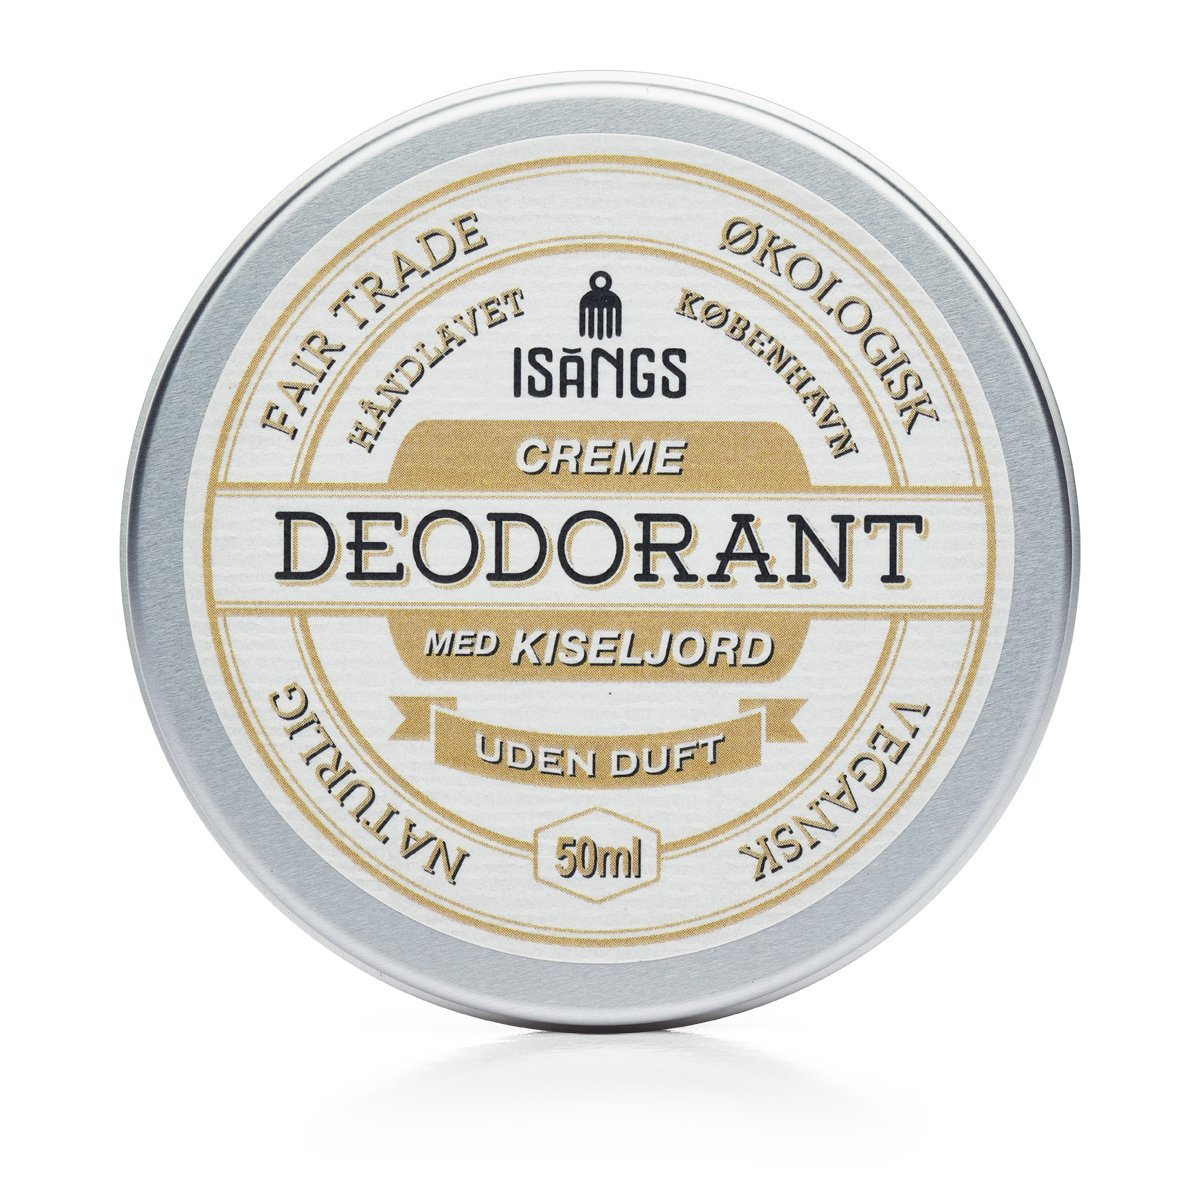 Creme Deodorant med Kiseljord UDEN DUFT